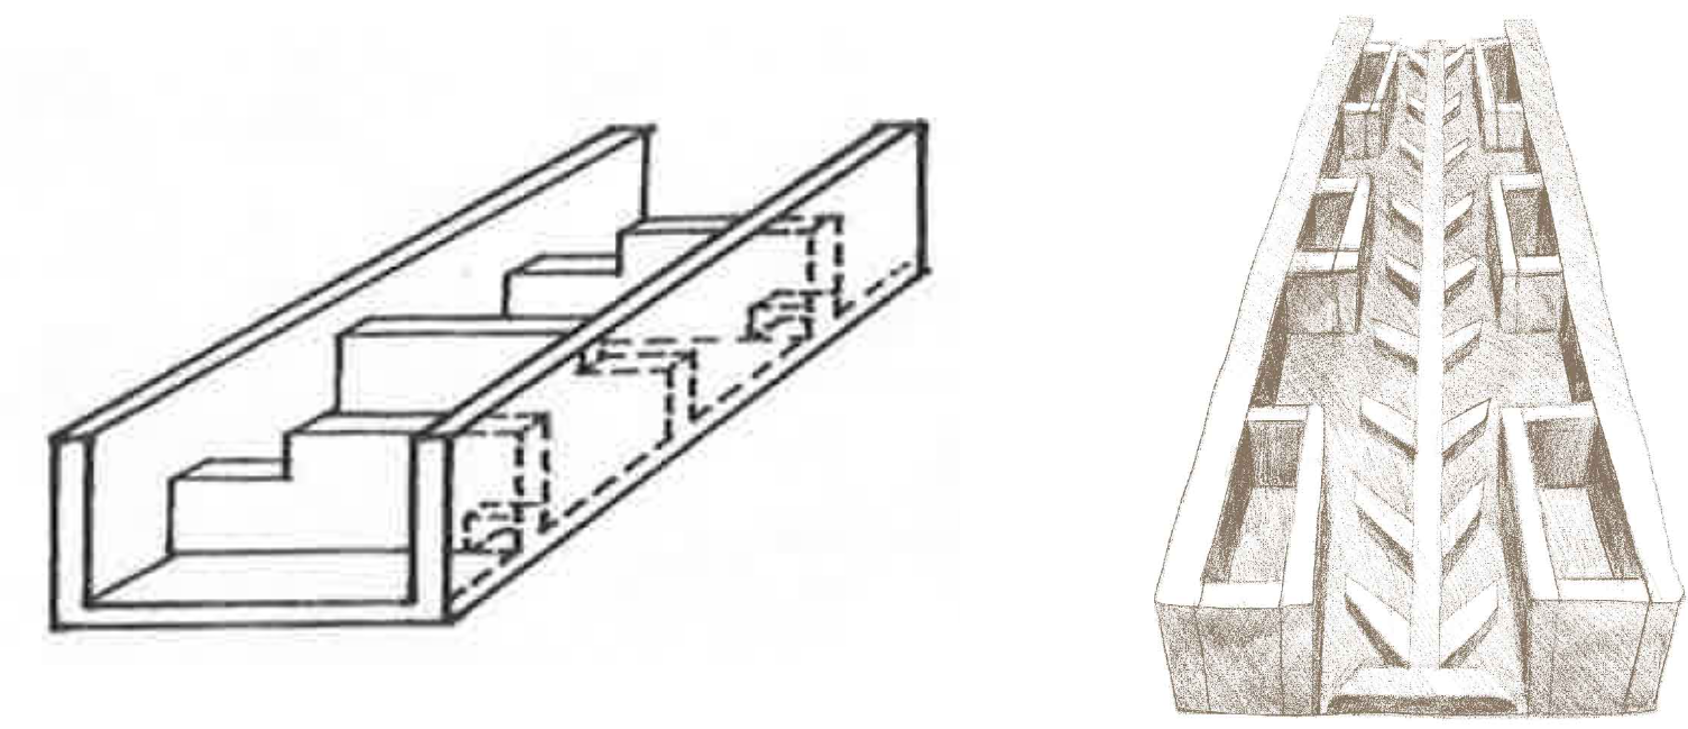 圖二、階段式魚道(左)與改良型舟通式魚道(右)設計示意圖。